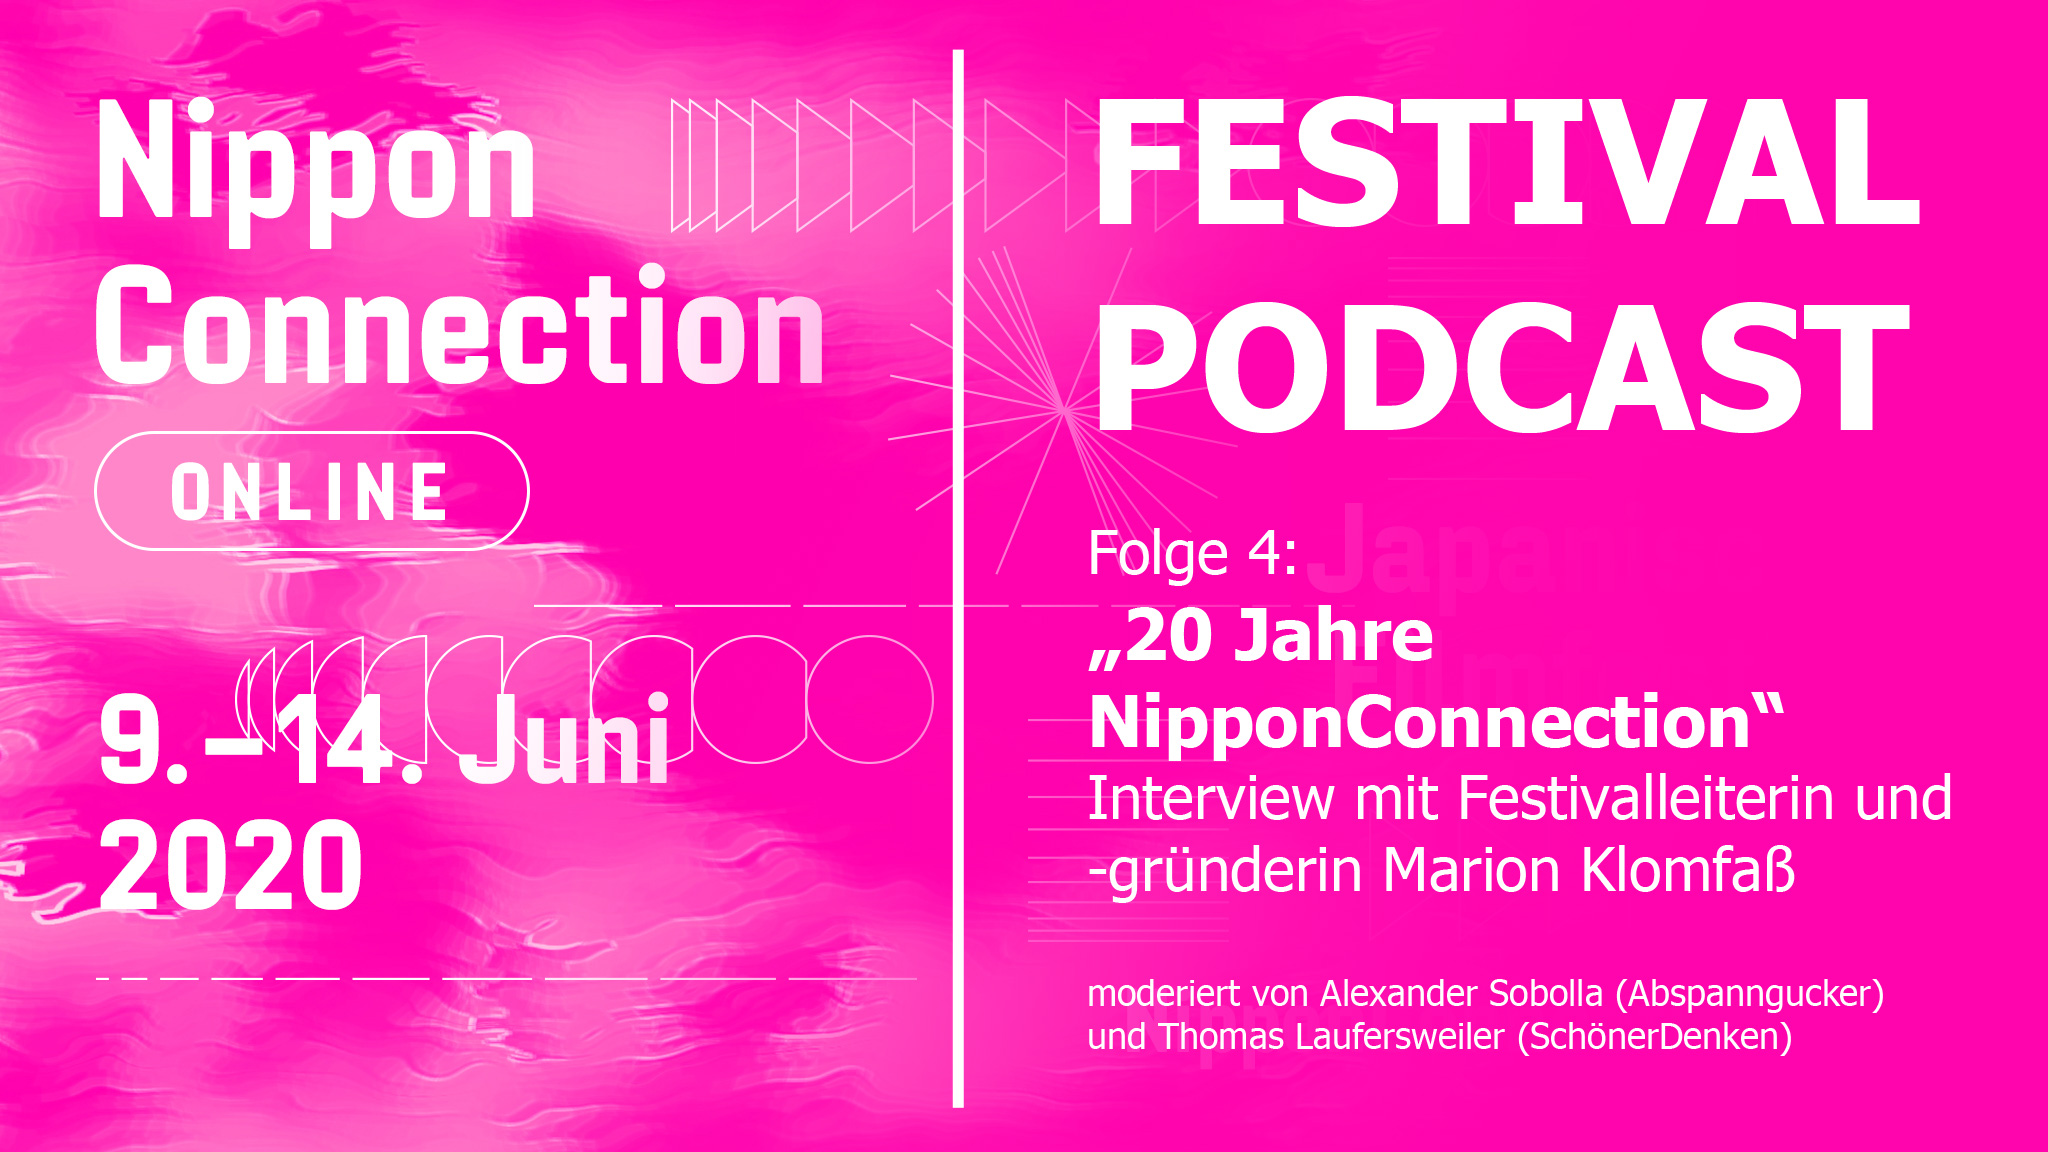 20 Jahre Nippon Connection 2020 - Interview mit Festivalleiterin Marion Klomfaß